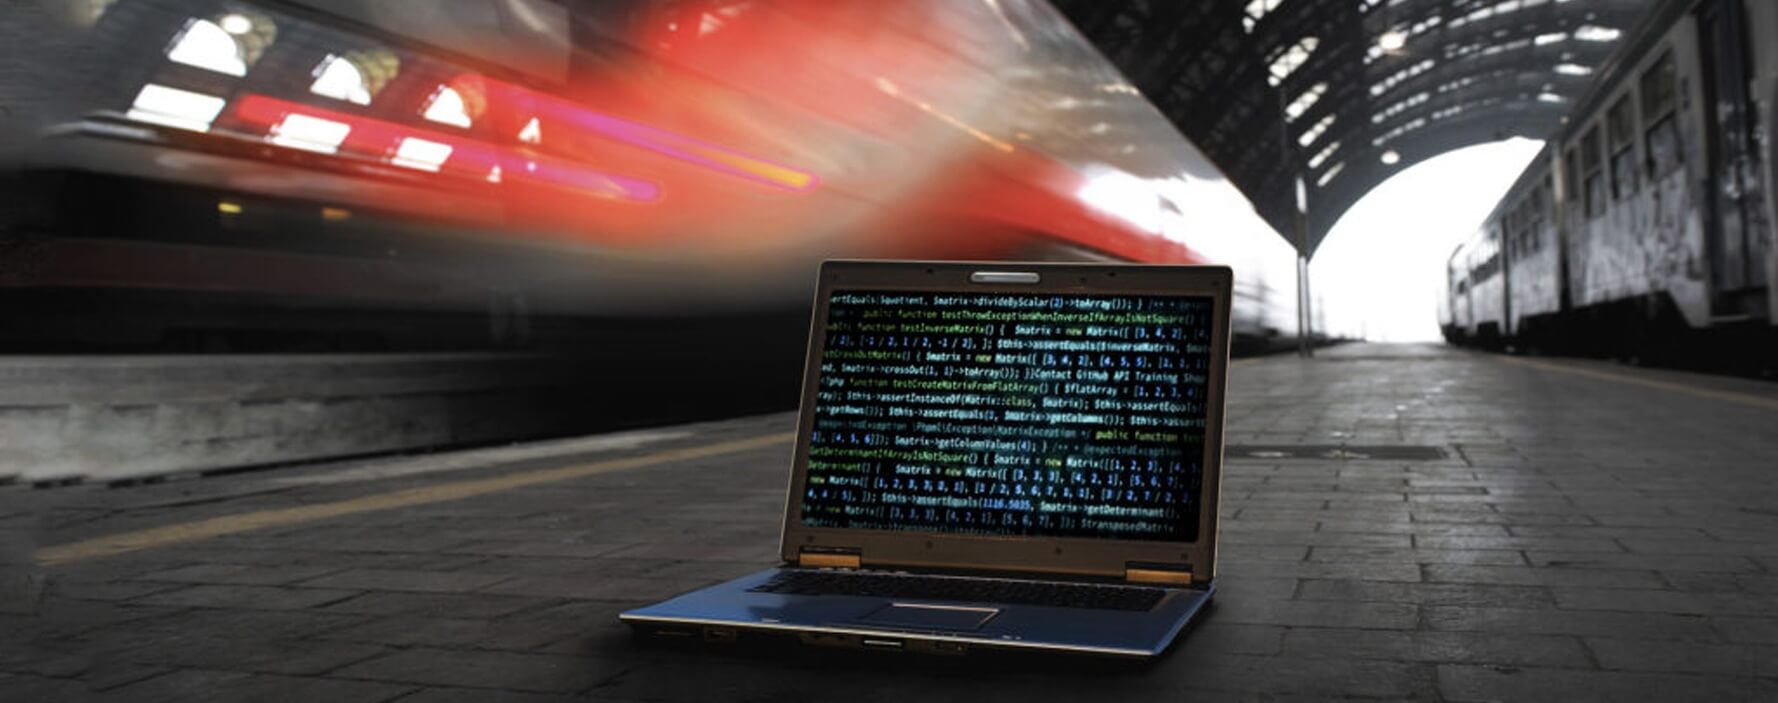 La seguridad cibernética en el transporte ferroviario como imperativo estratégico